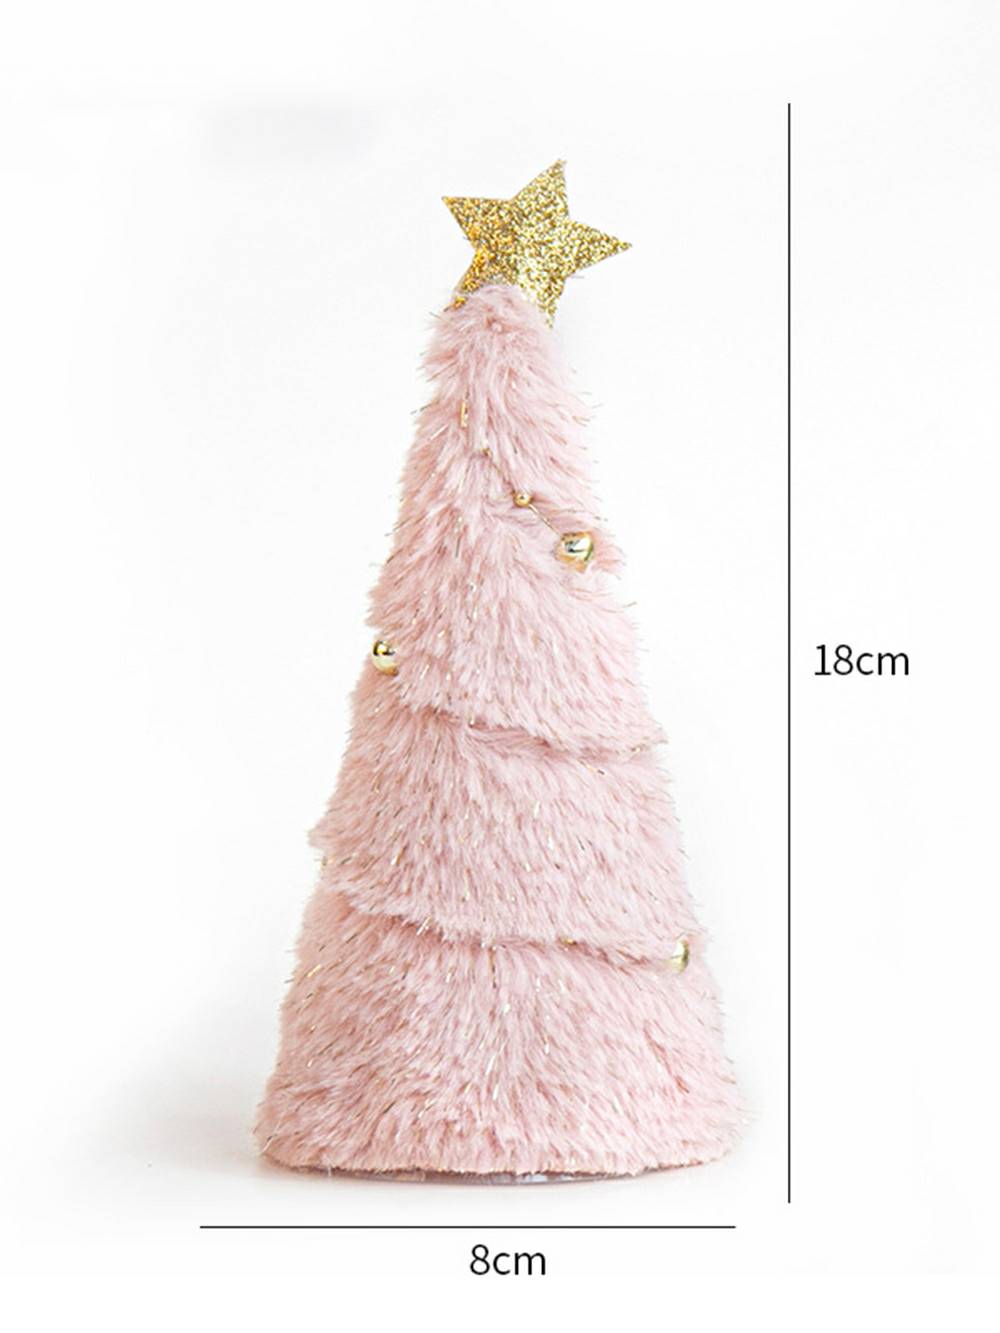 Adorable adorno de árbol de Navidad con forma de ángel de peluche